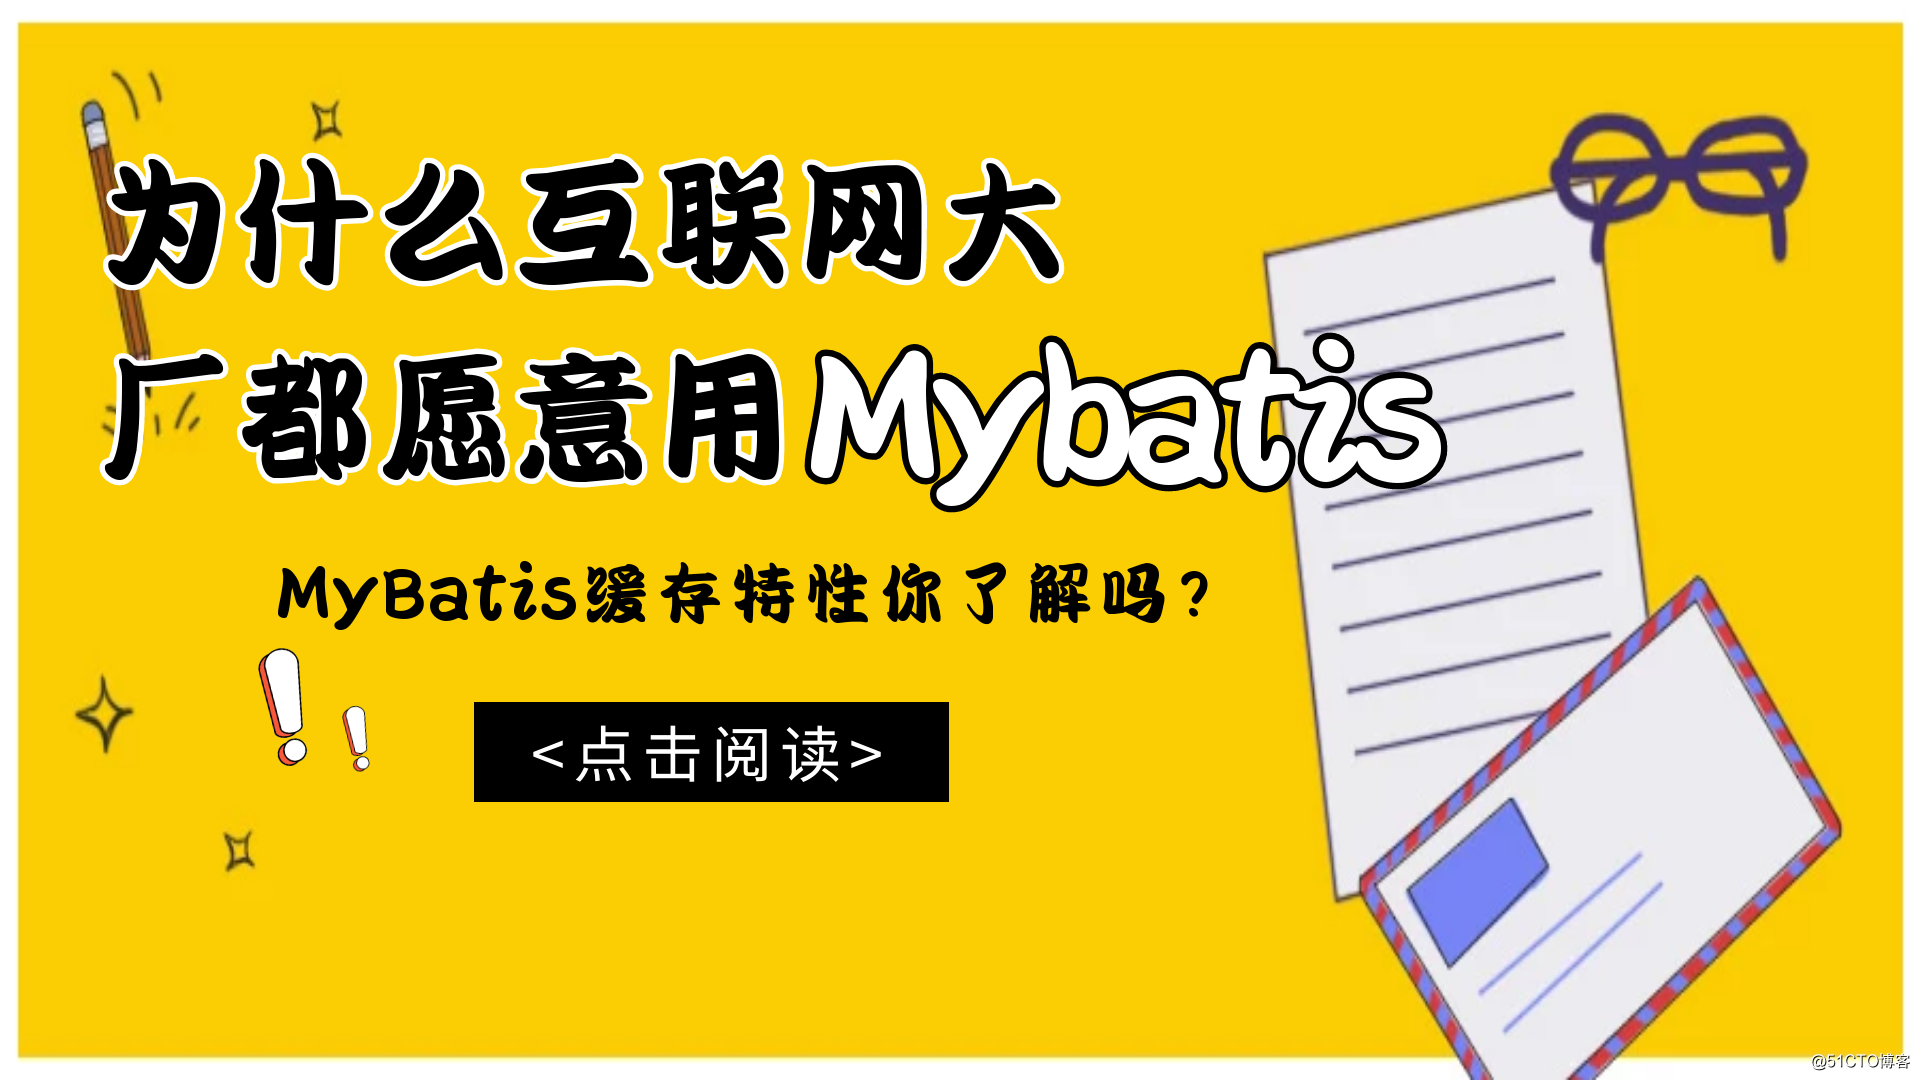 为什么互联网大厂都愿意用Mybatis?MyBatis缓存特性你了解吗？